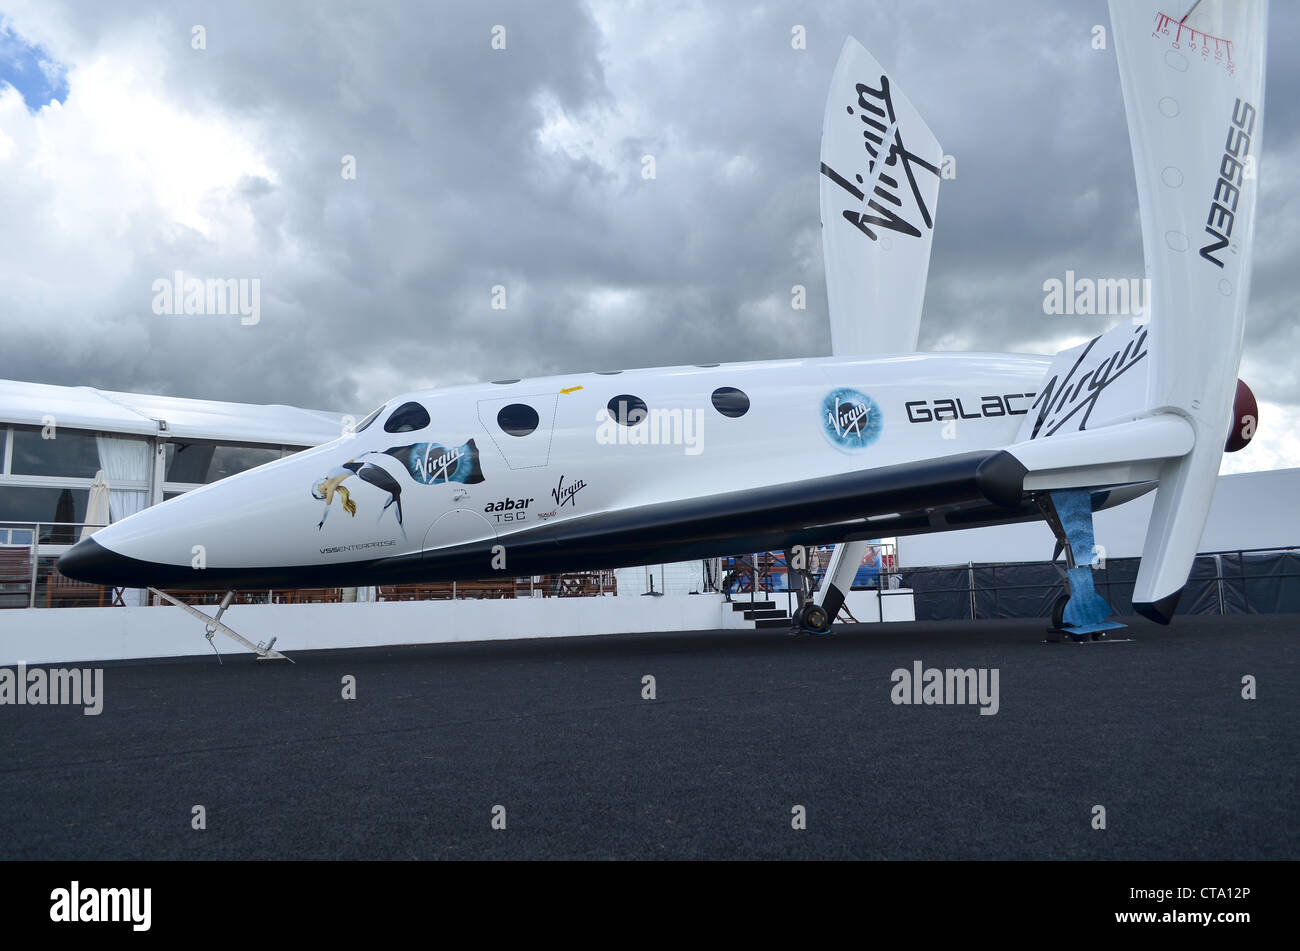 Virgin Galactic Spaceship dos réplicas en exhibición en Farnborough International Airshow 2012 Foto de stock